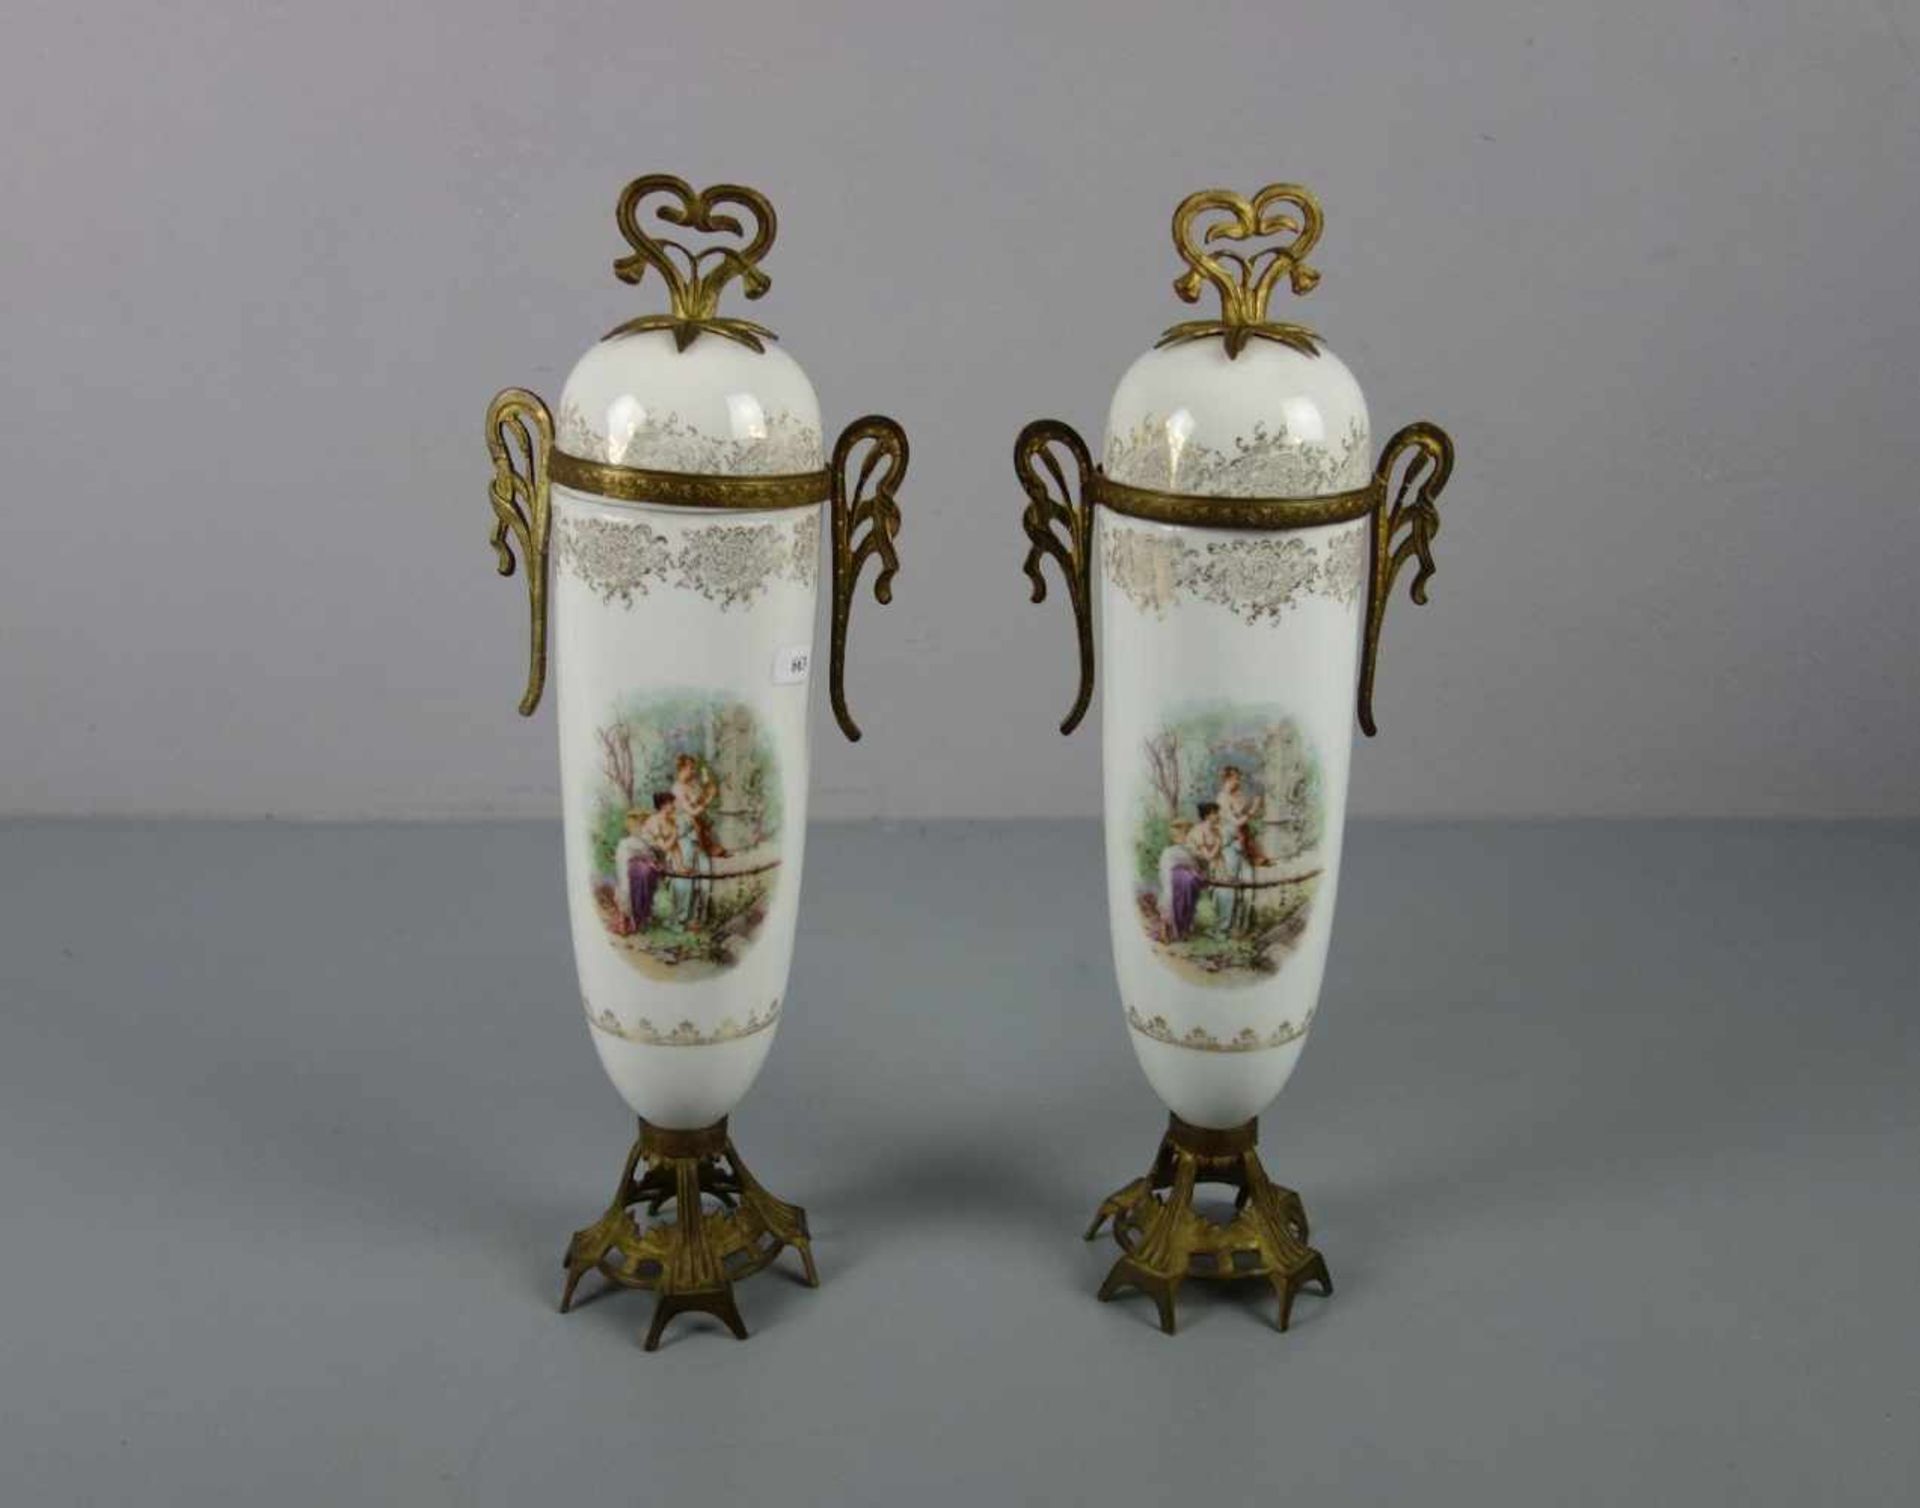 VASENPAAR / PAAR DECKELVASEN / pair of vases, um 1900, Porzellan mit Metallmonturen (bronzierter